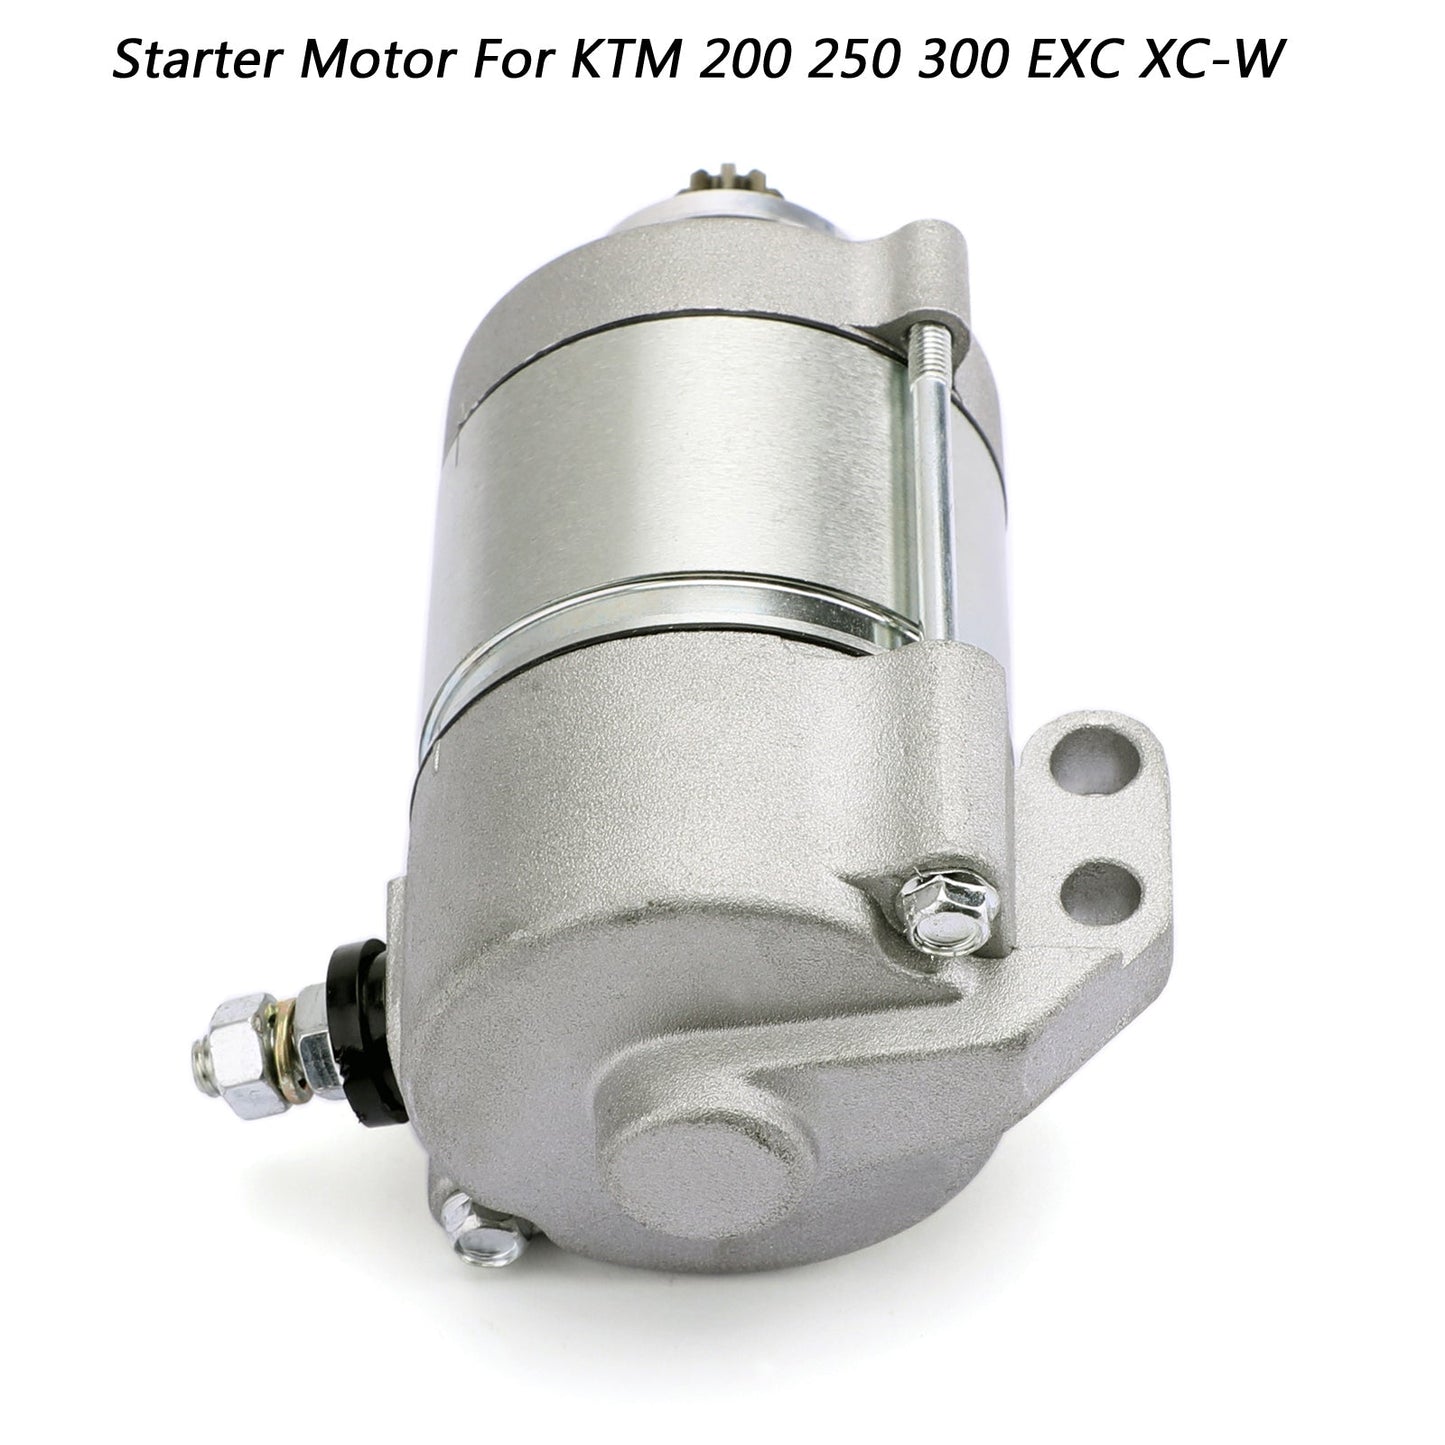 Elektromotor für KTM 200 XC-W 2013-2016 250 300 Exc XC XC-W Sechs Tage Generikum